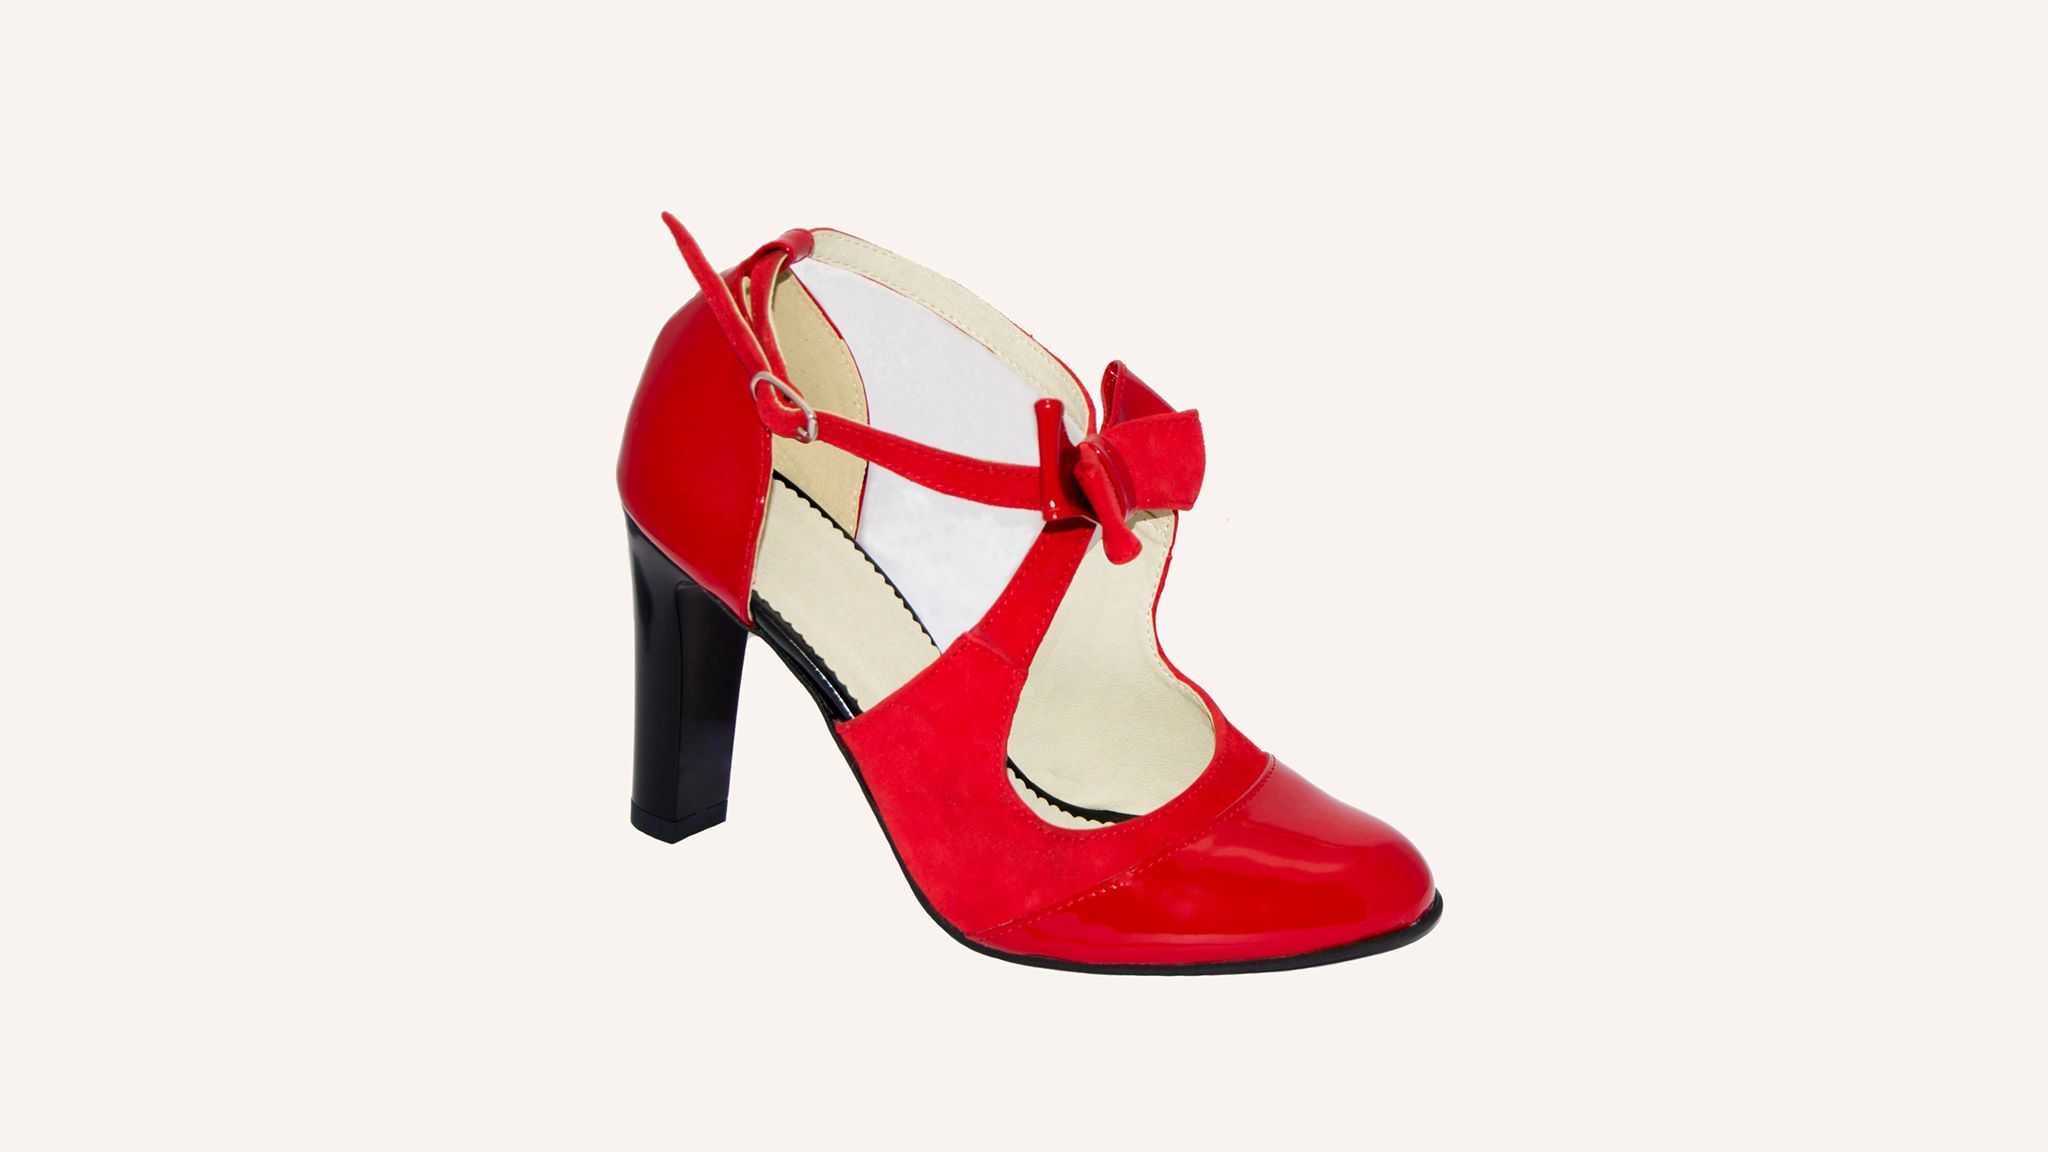 Pantofi roșii din piele naturală – P0125 pantofi.moda/ imagine 2022